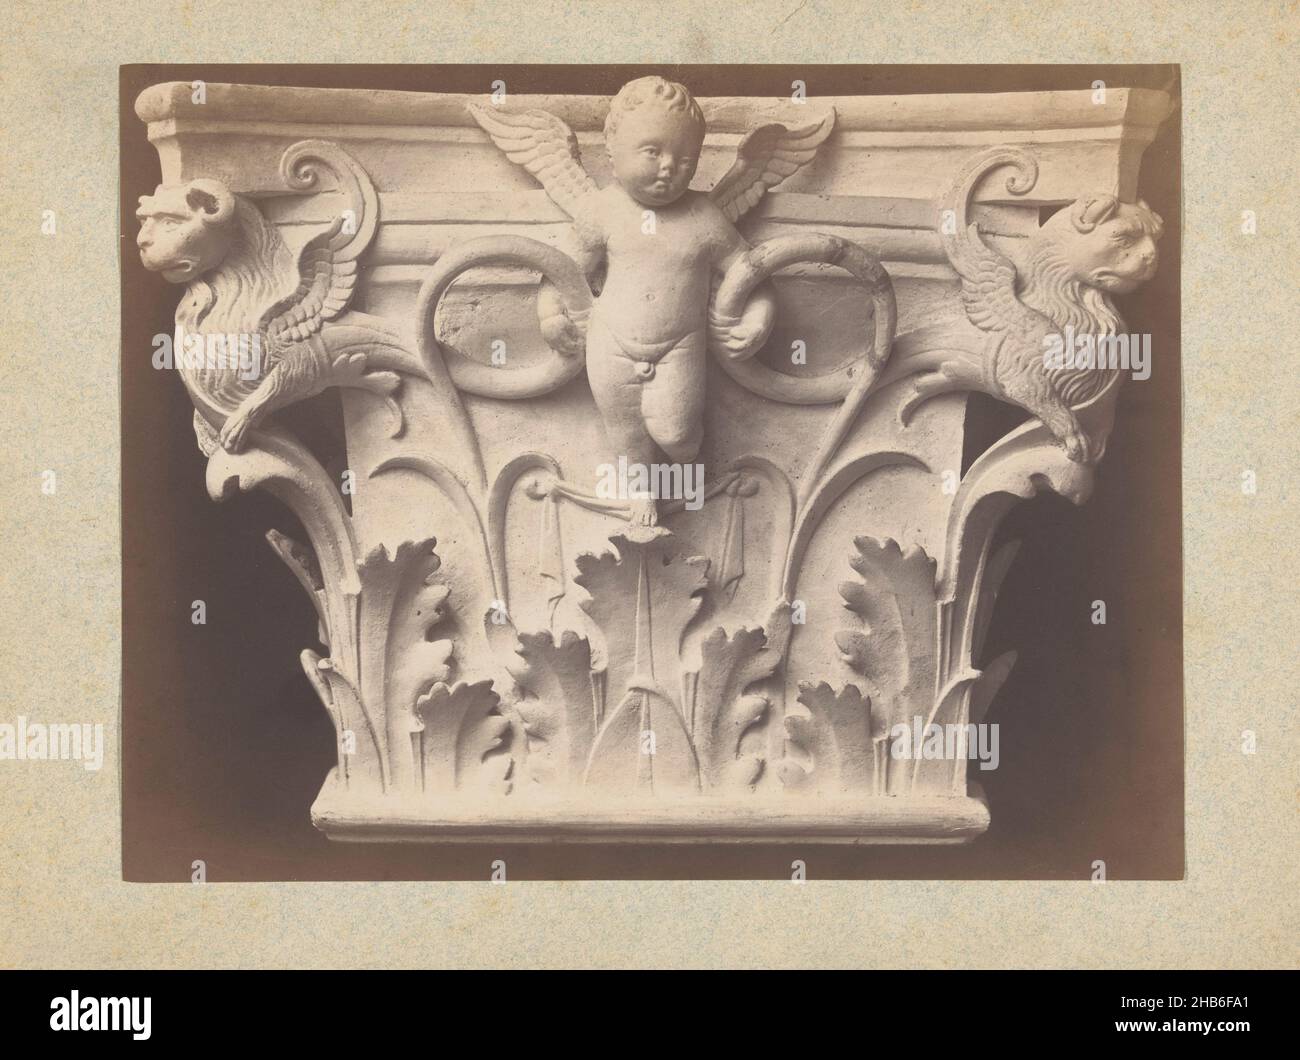 Cappella con un putto e leoni alati, anonimi, in o dopo 1875 - c.. 1900, cartone, stampa albume, altezza 241 mm x larghezza 192 mm Foto Stock